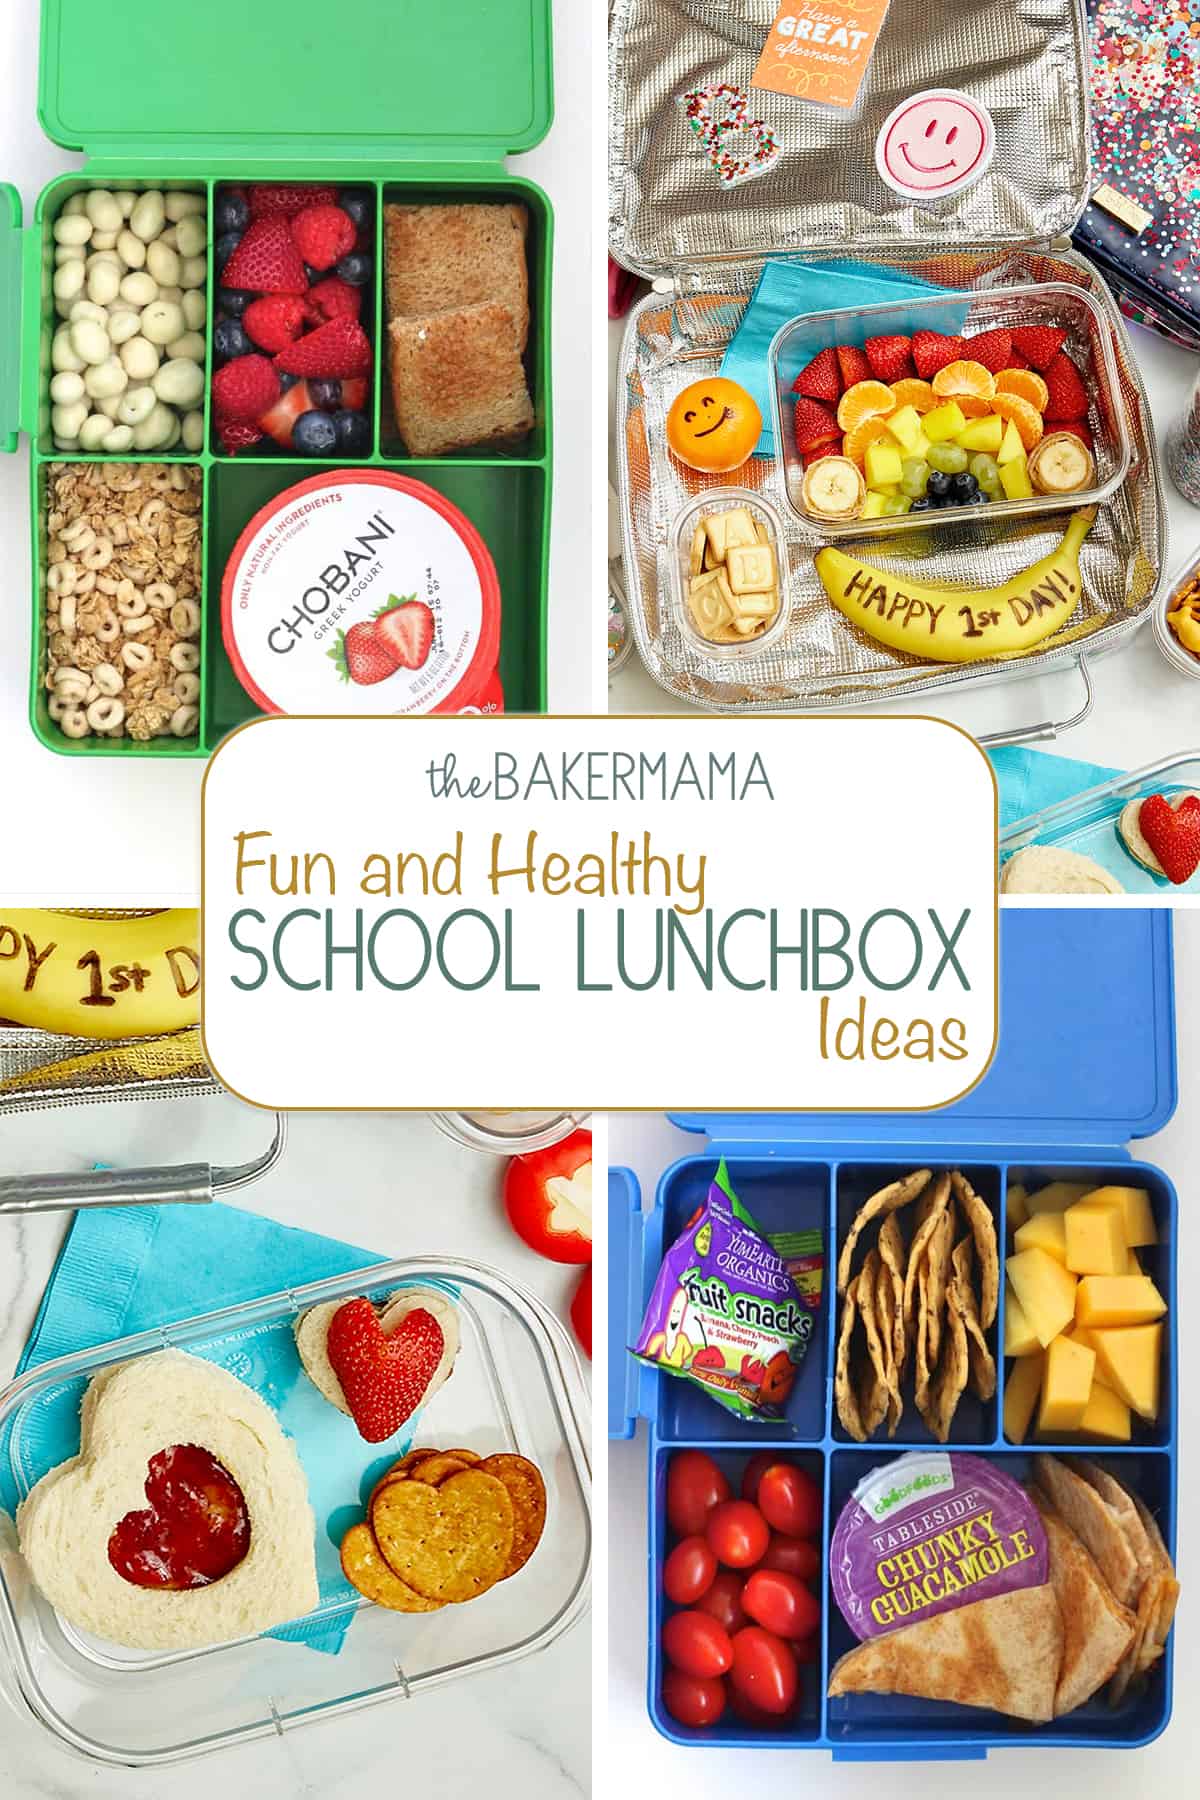 Four fun lunchbox ideas.